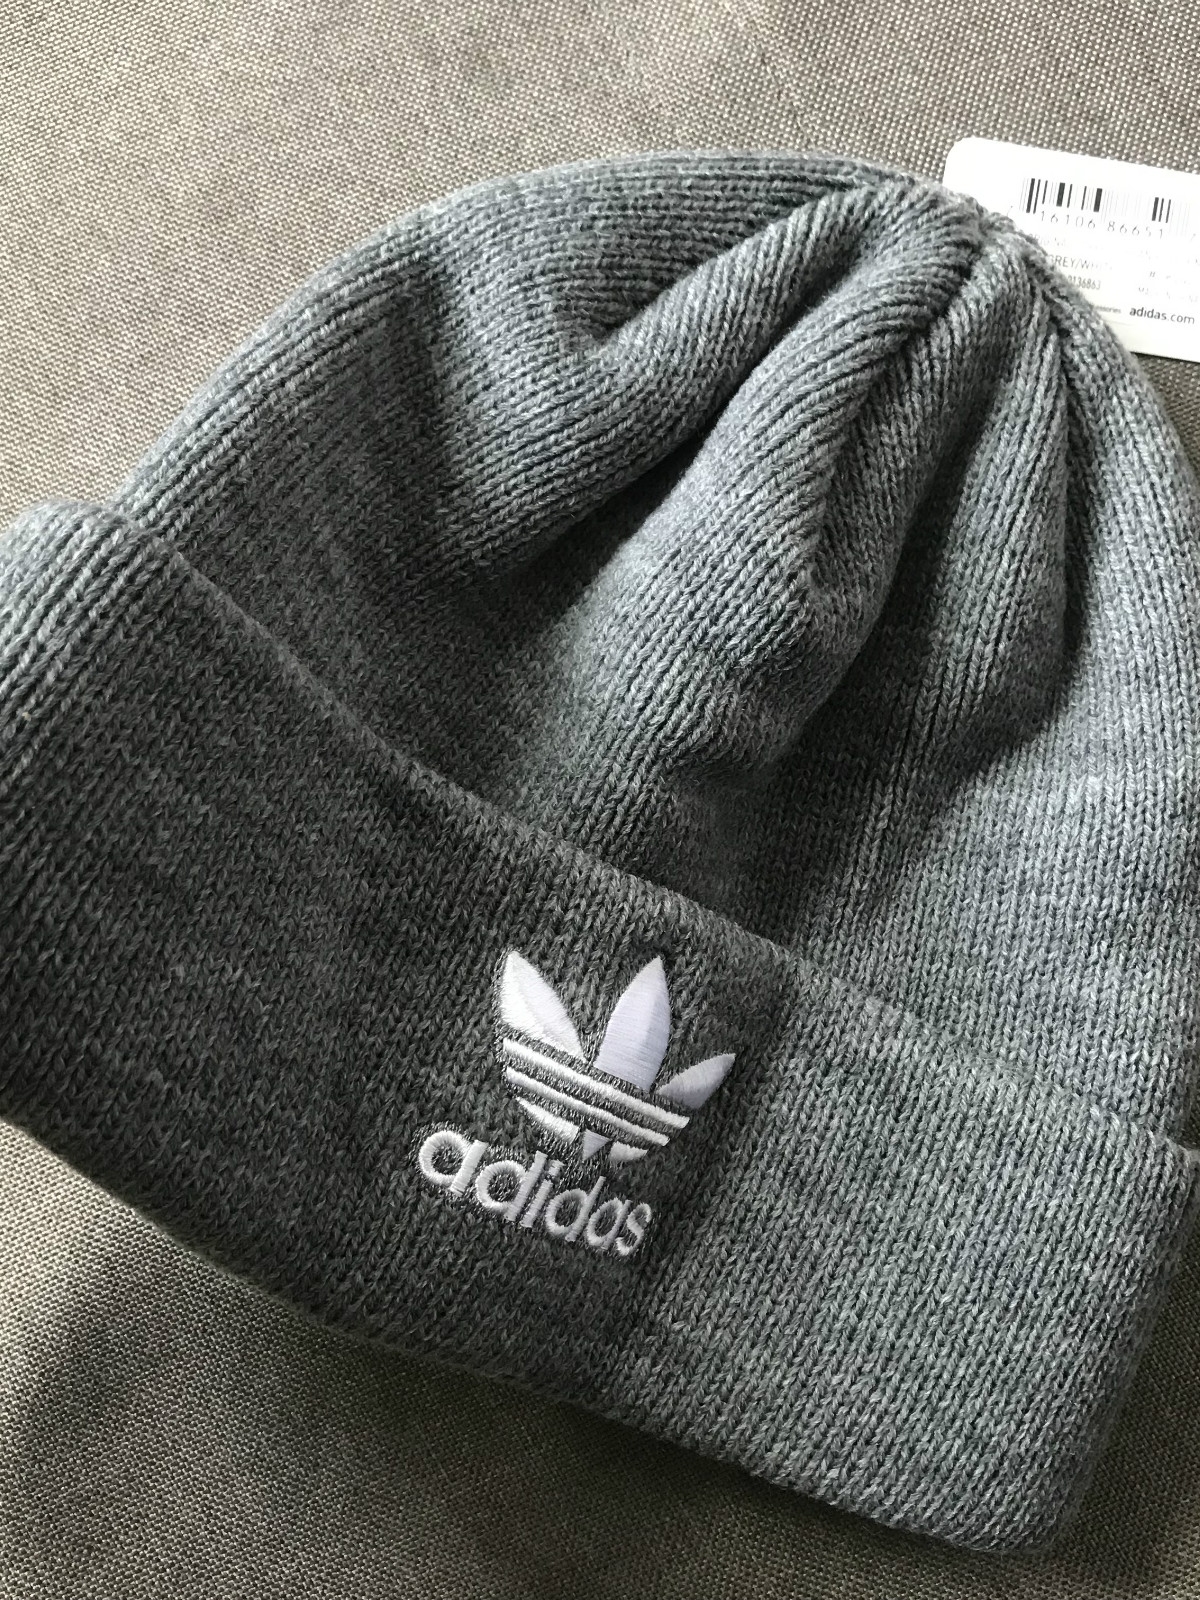 Adidas 三叶草阿迪刺绣针织毛线帽